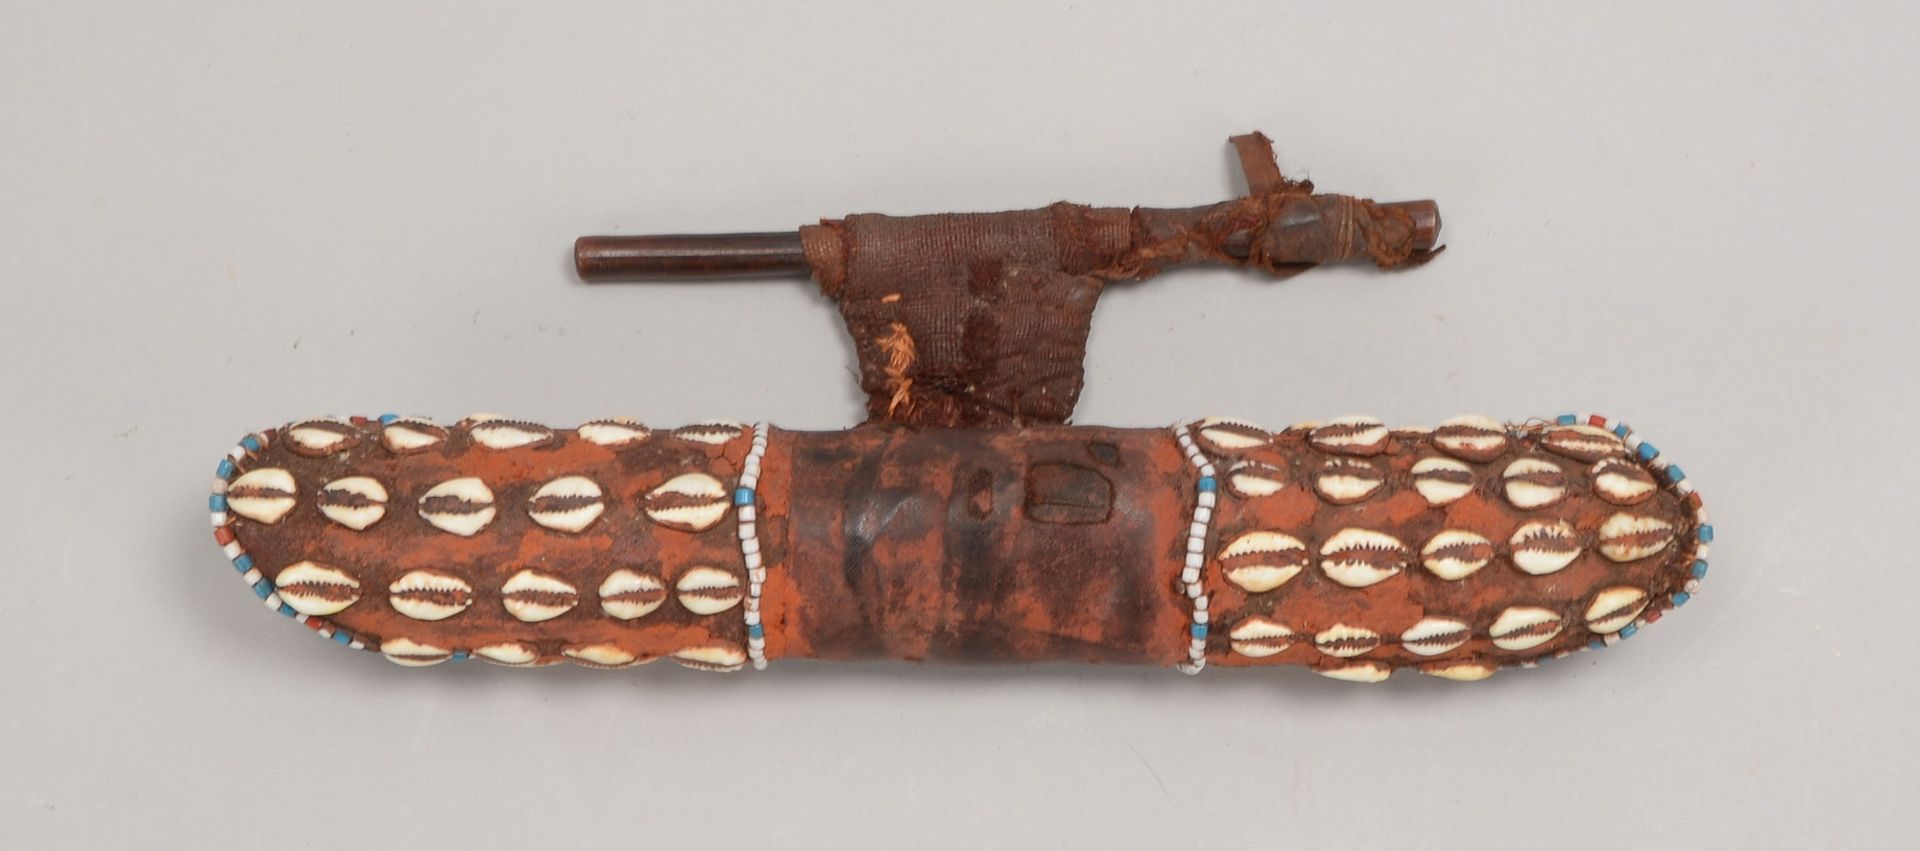 Kult-/Zeremonienobjekt, wohl Holz, mit Leder bezogen, verziert mit Muscheln und Perlen